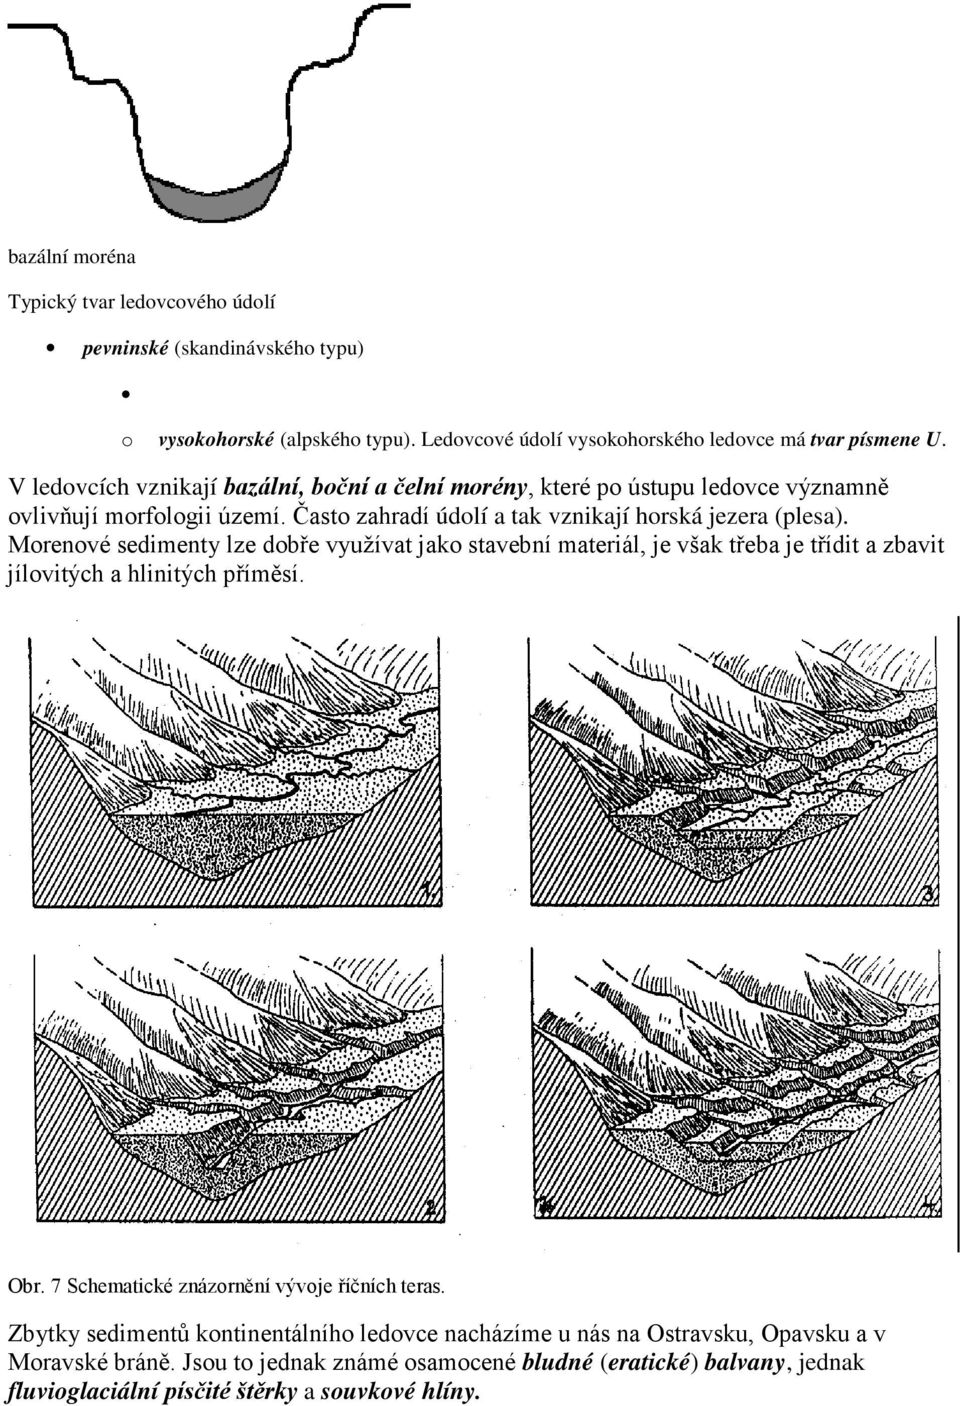 Morenové sedimenty lze dobře využívat jako stavební materiál, je však třeba je třídit a zbavit jílovitých a hlinitých příměsí. Obr. 7 Schematické znázornění vývoje říčních teras.